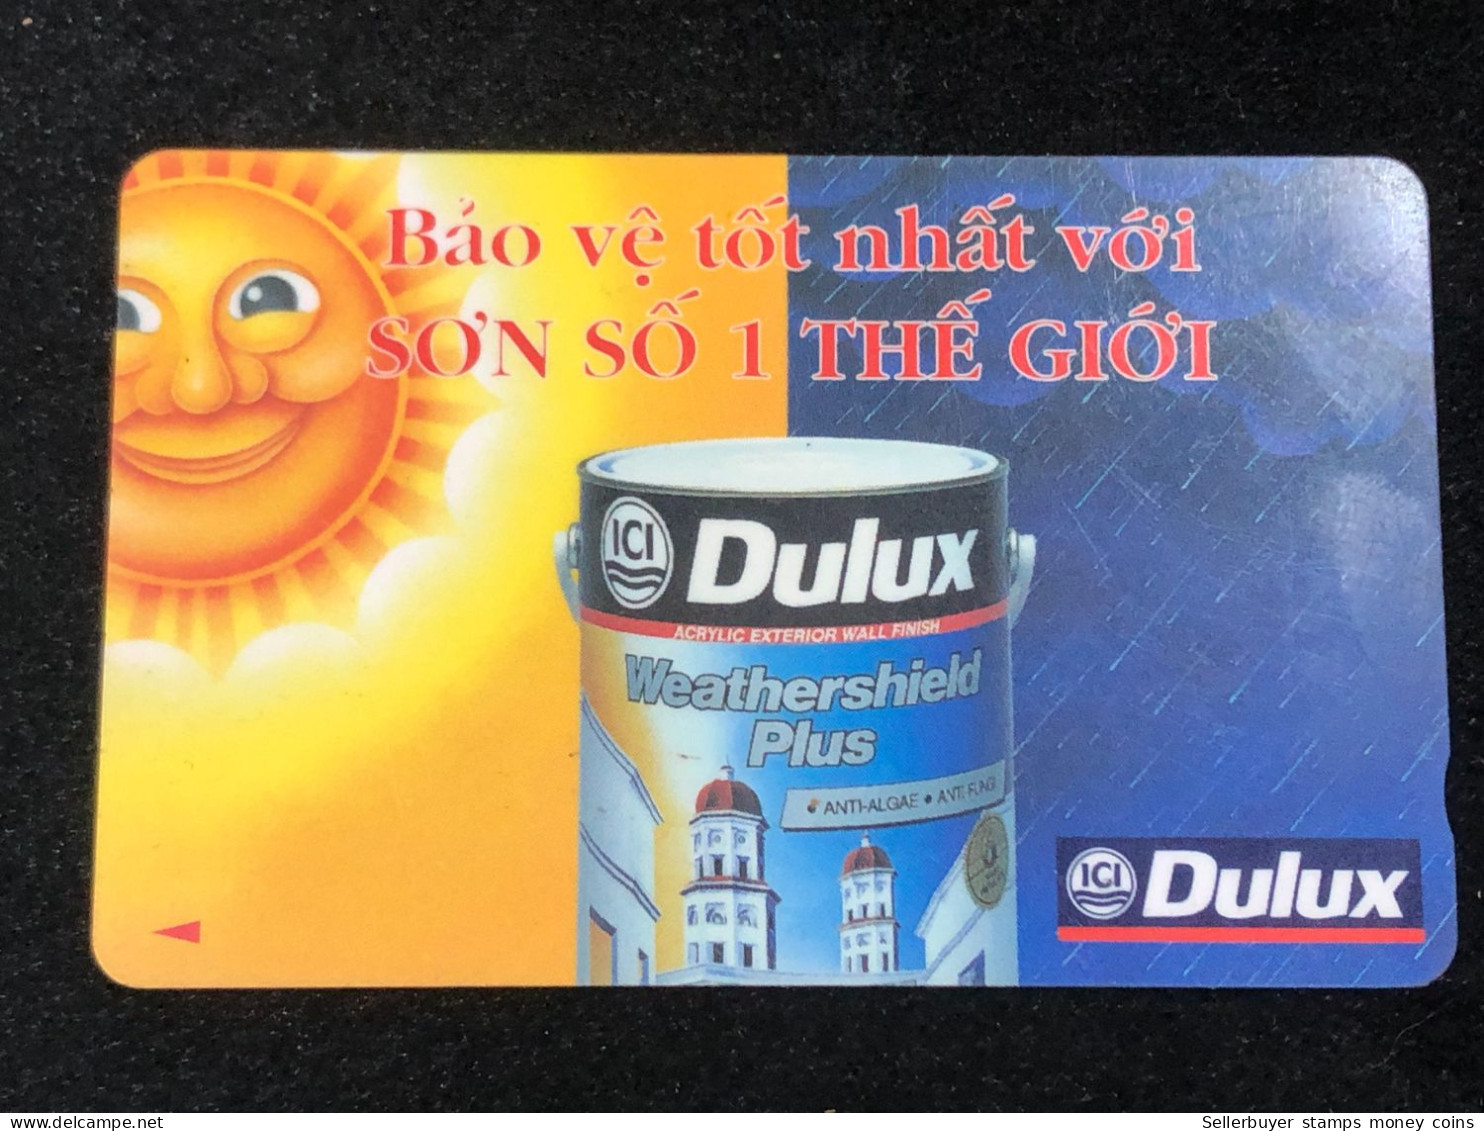 Card Phonekad Vietnam( Ici Dulux 1- 60 000dong-1997)-1pcs - Vietnam